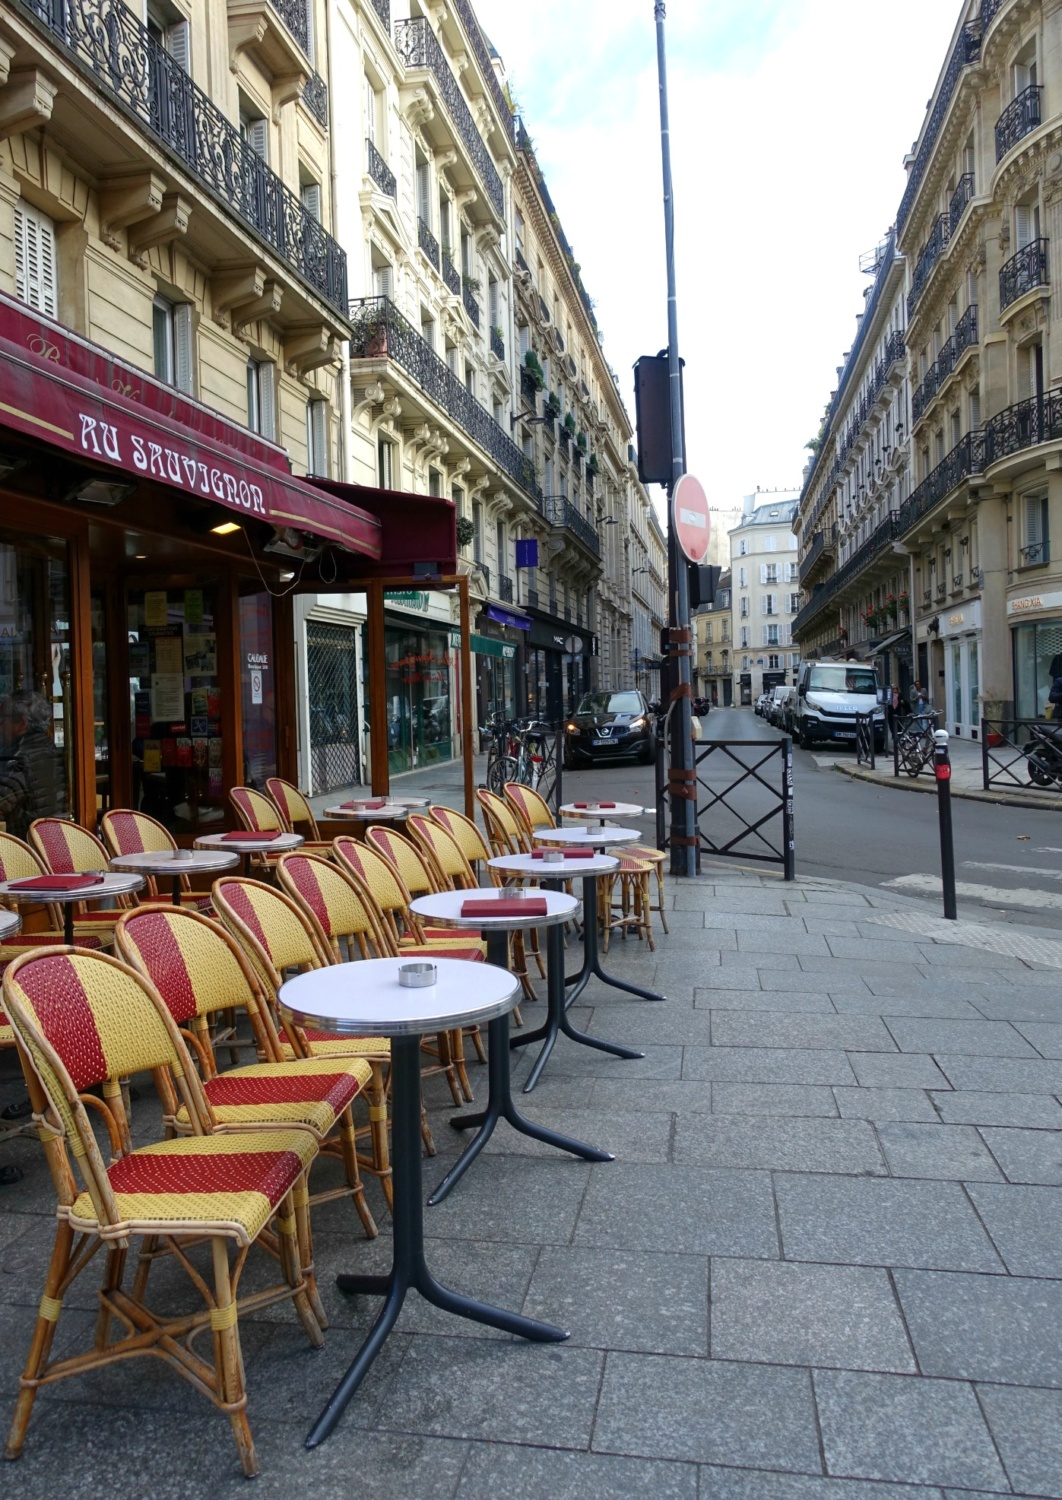 Paris sidewalk cafe ready for business. Details at une femme d'un certain age.